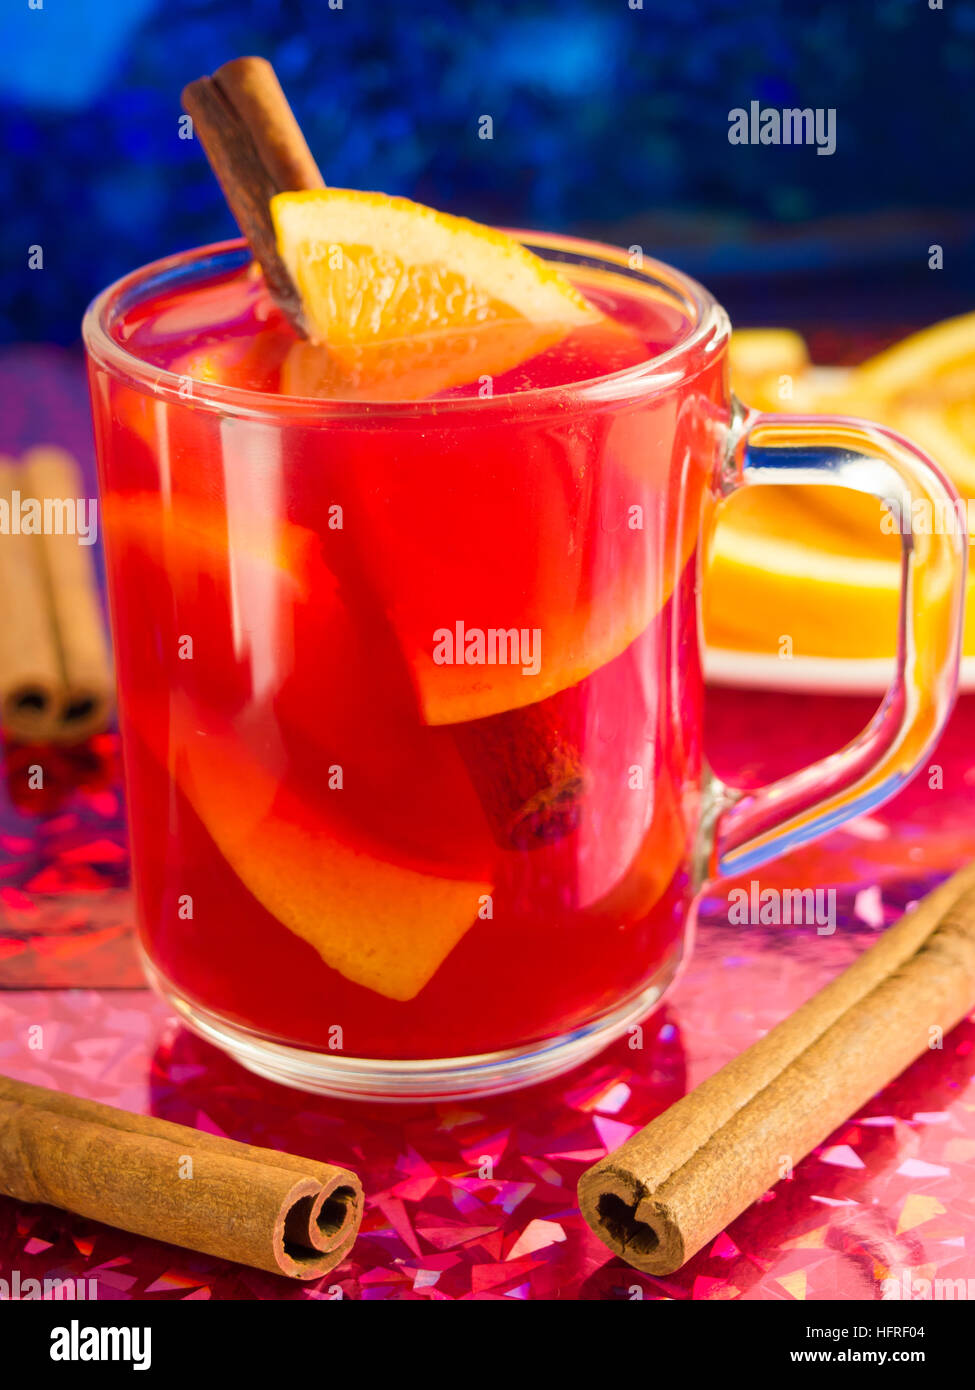 Transparente Becher mit Zitrusfrüchten Glühwein, Zimt und Orange, hell glänzenden Hintergrund Unschärfe mit geringer Tiefe des Fokus Stockfoto